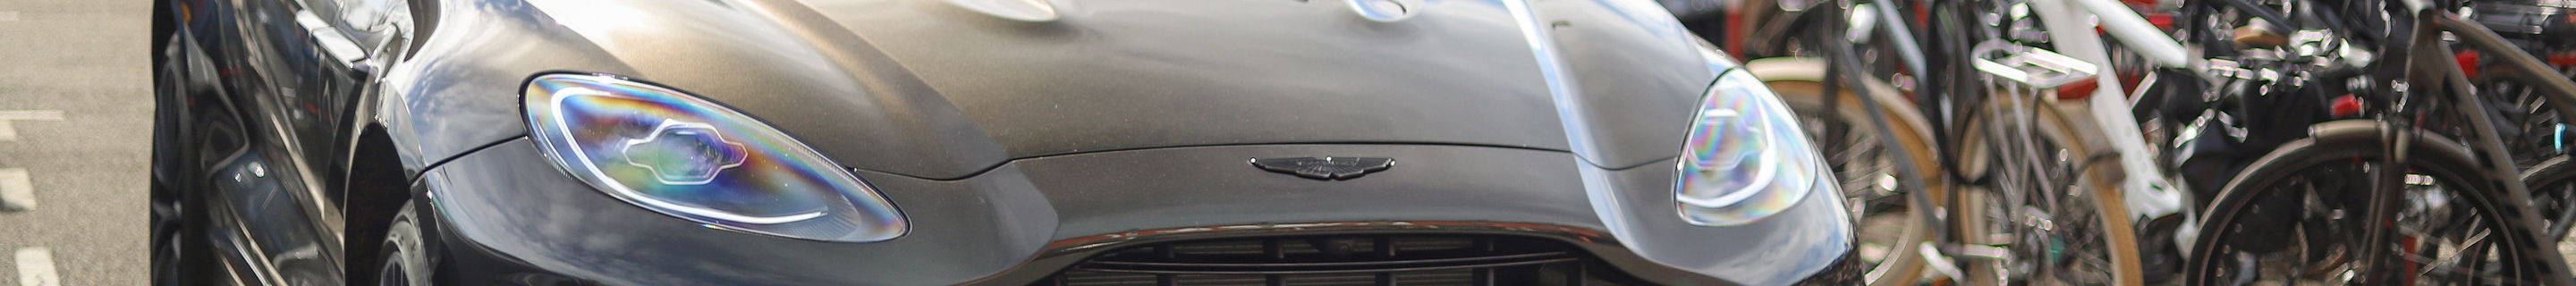 Aston Martin DBX707